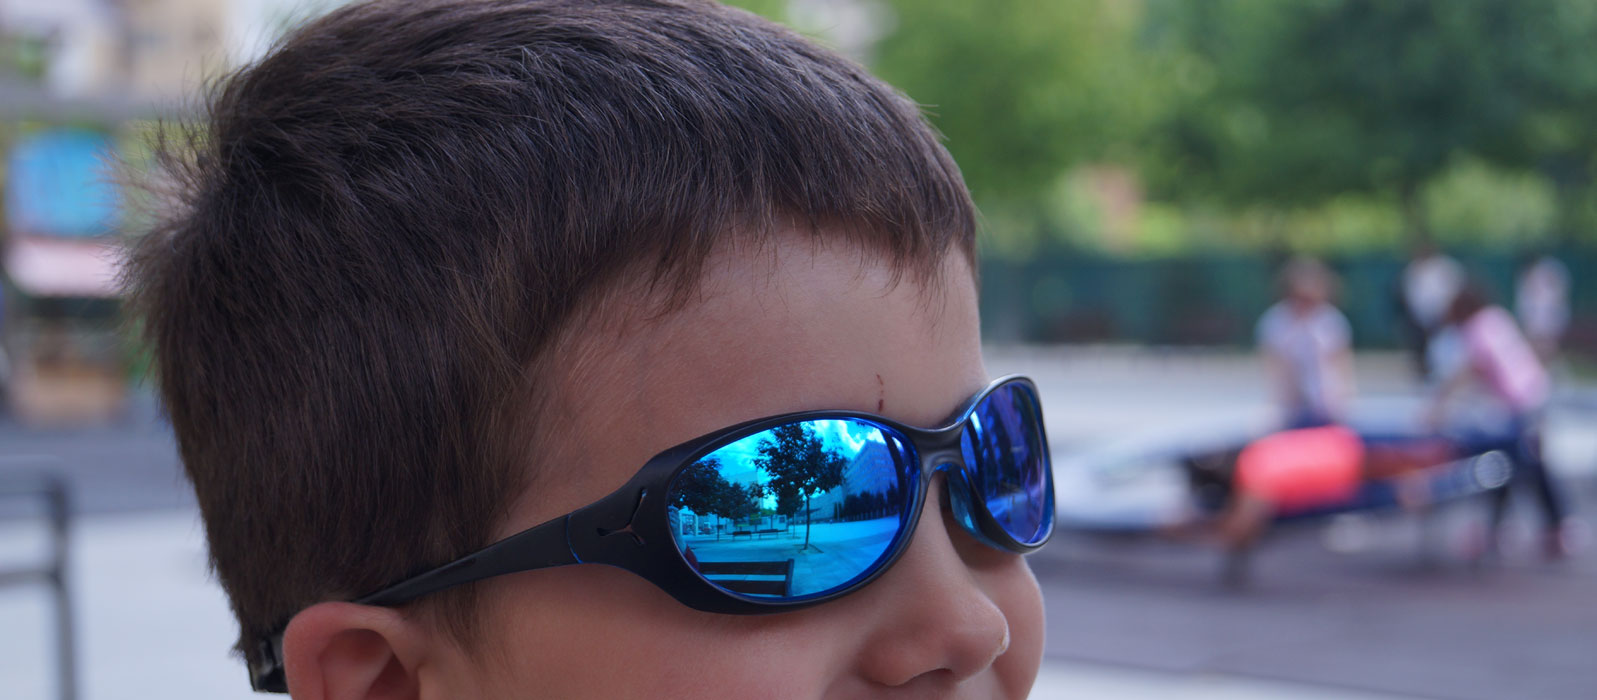 Sudor Expansión lanzamiento Proteger los ojos de los niños del sol es importante. Gafas de sol  infantiles para niños y bebés. - Blog de Cestaland